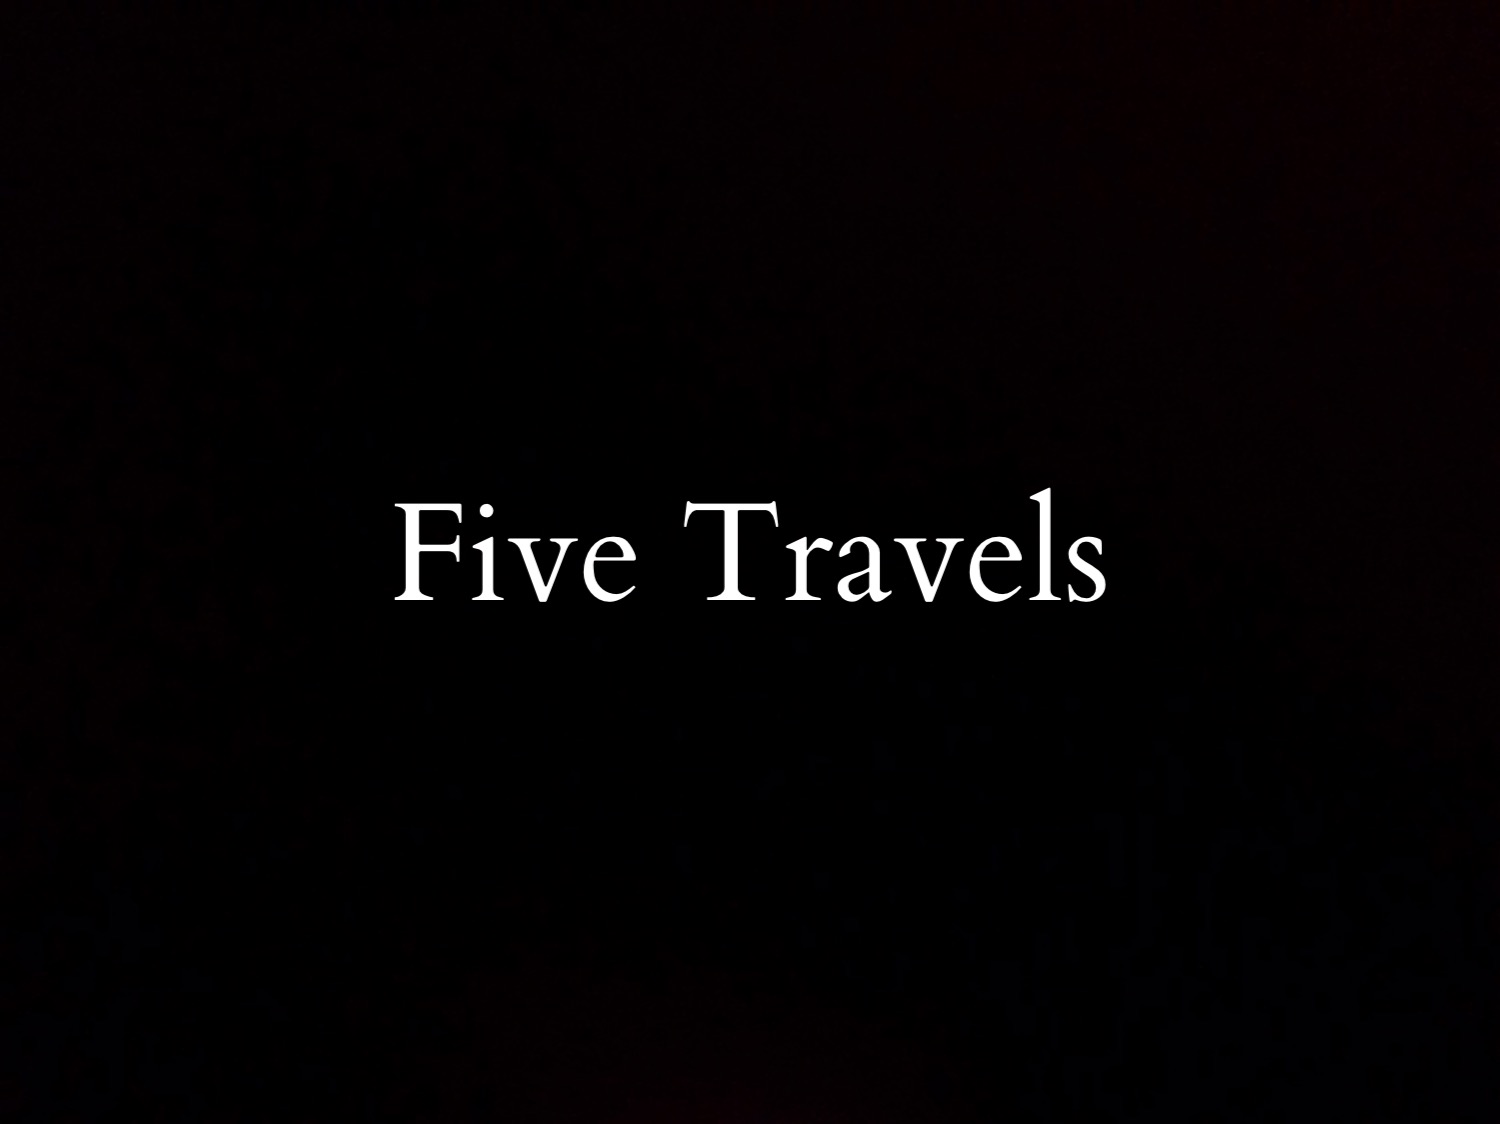 FIVE TRAVELS